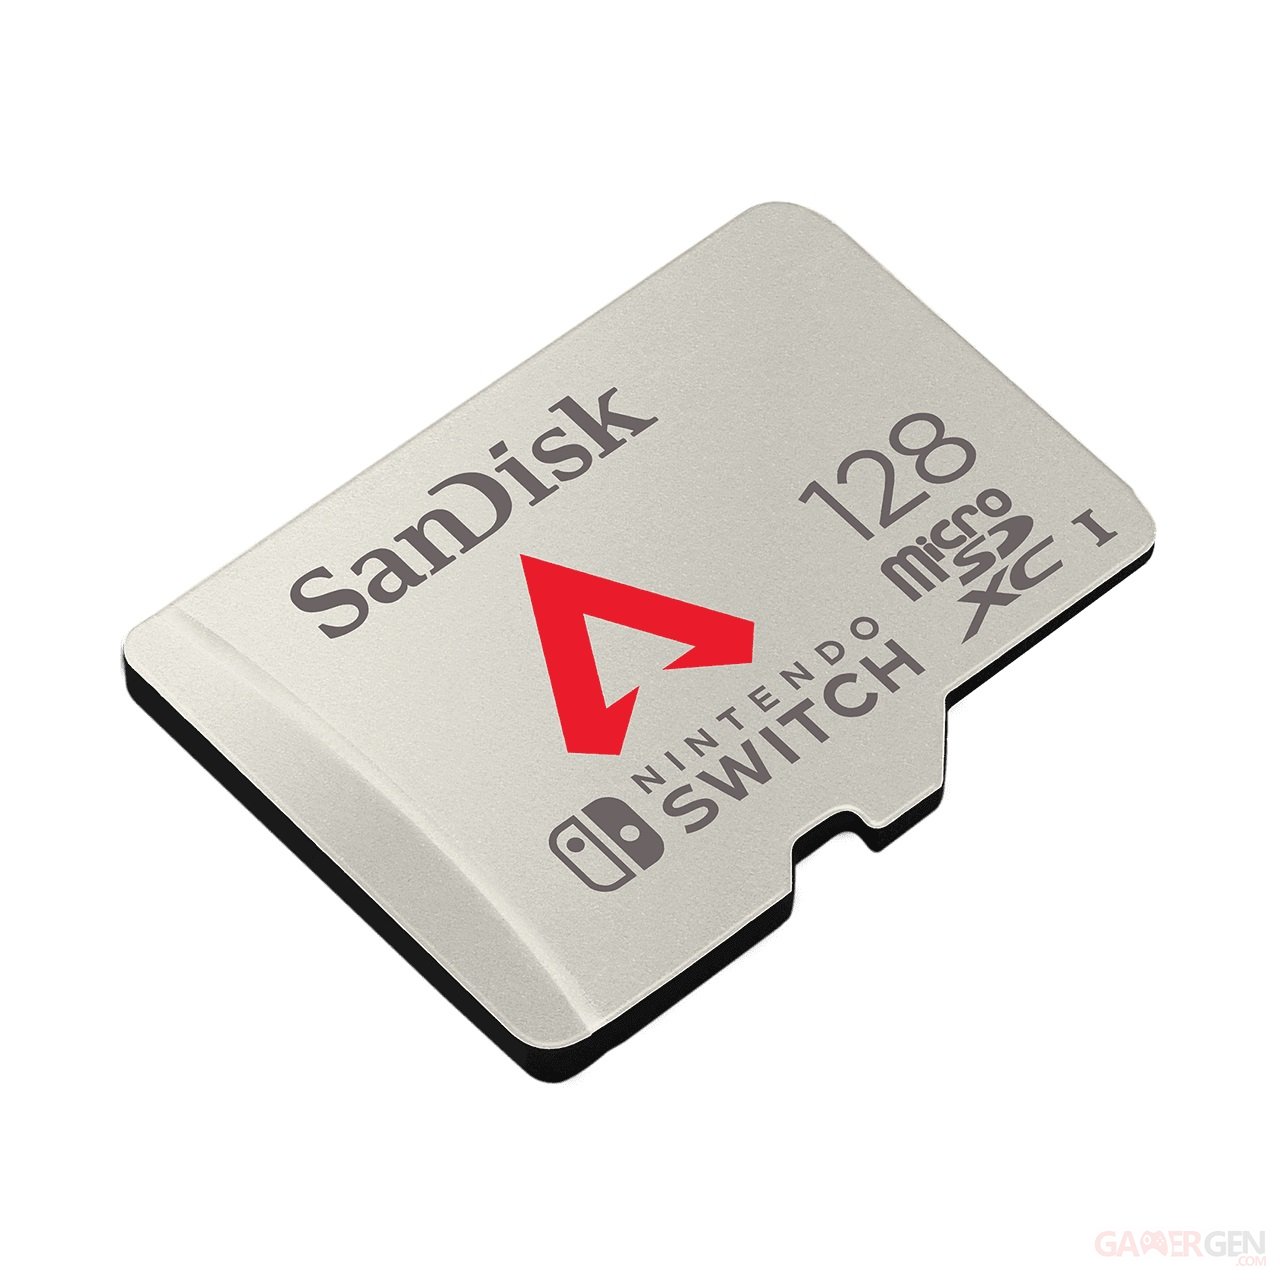 Apex Legends : SanDisk dévoile une carte microSD aux couleurs du